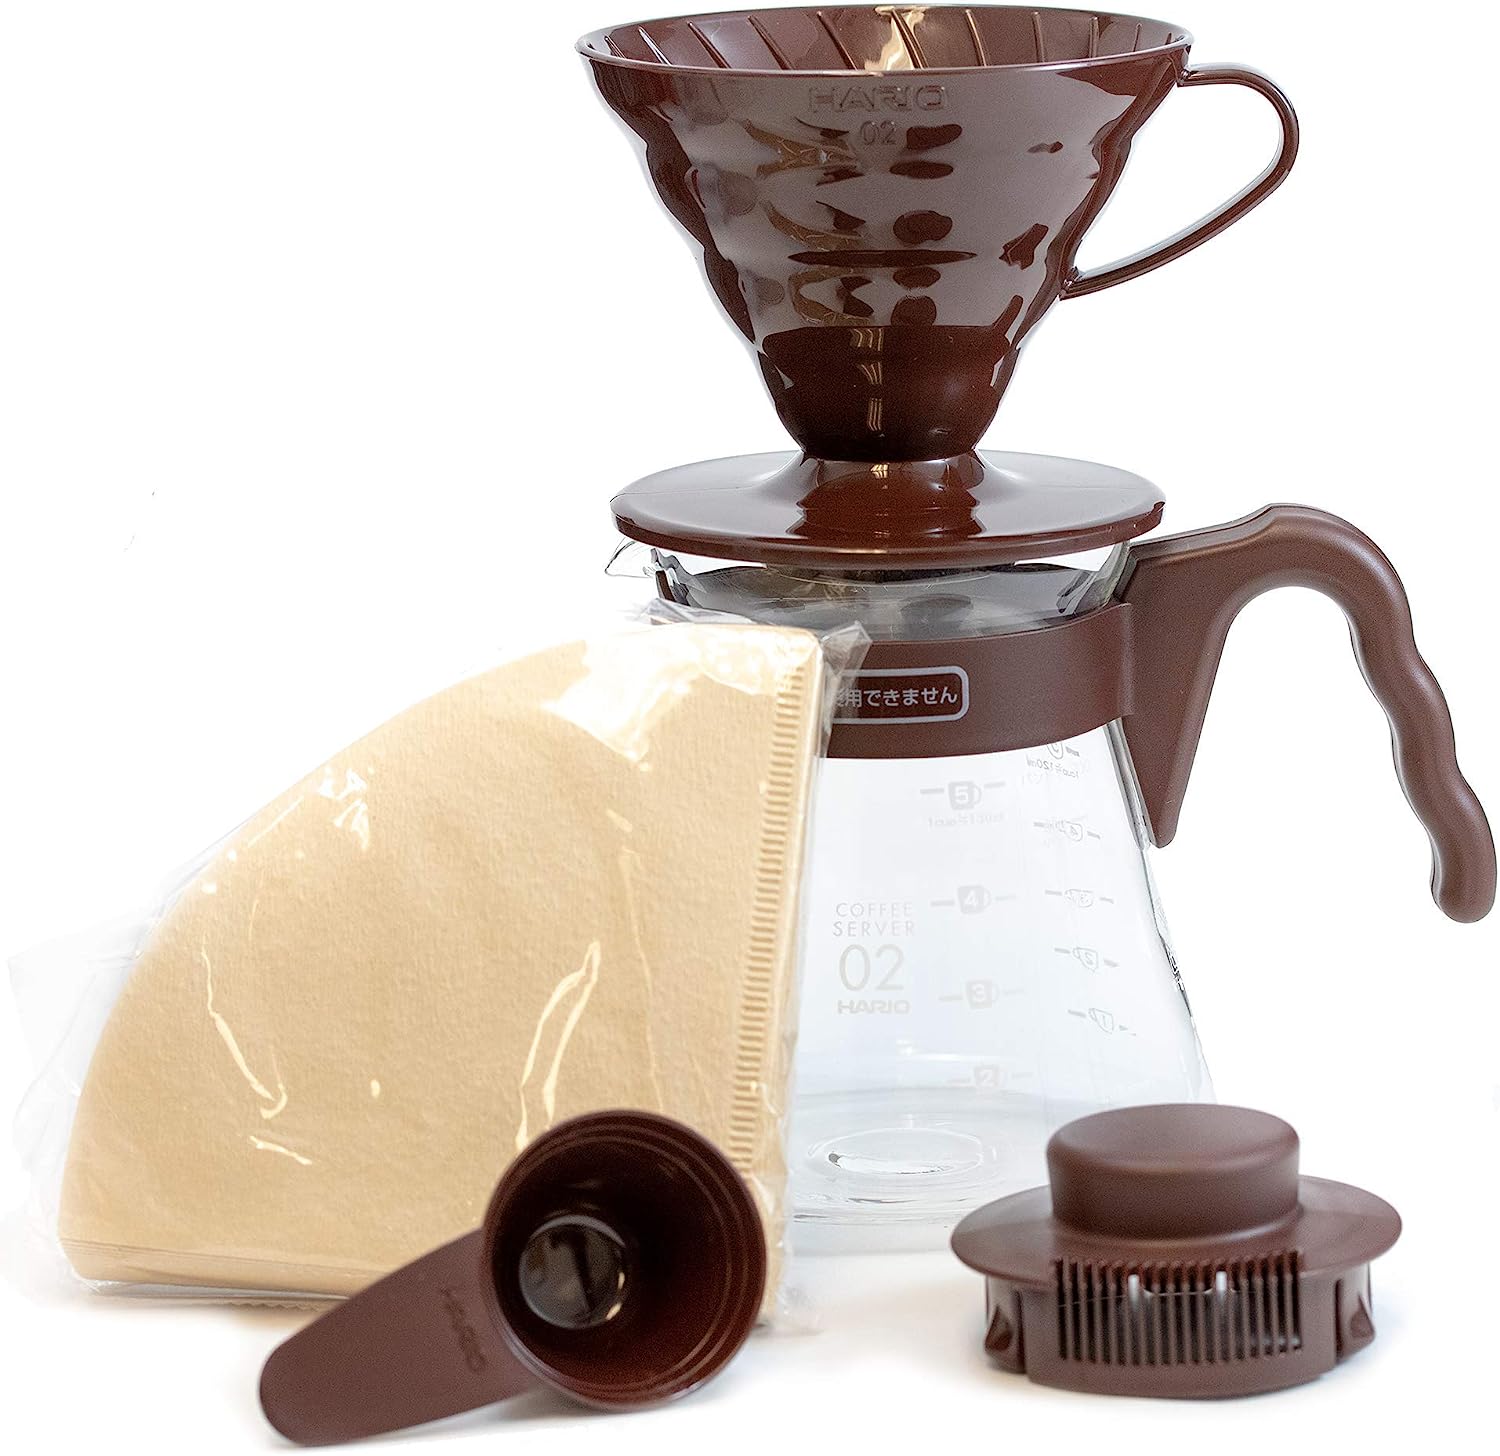 Набор для заваривания кофе Hario VCSD-02CBR V60 сервировочный чайник + воронка 02 пластик,